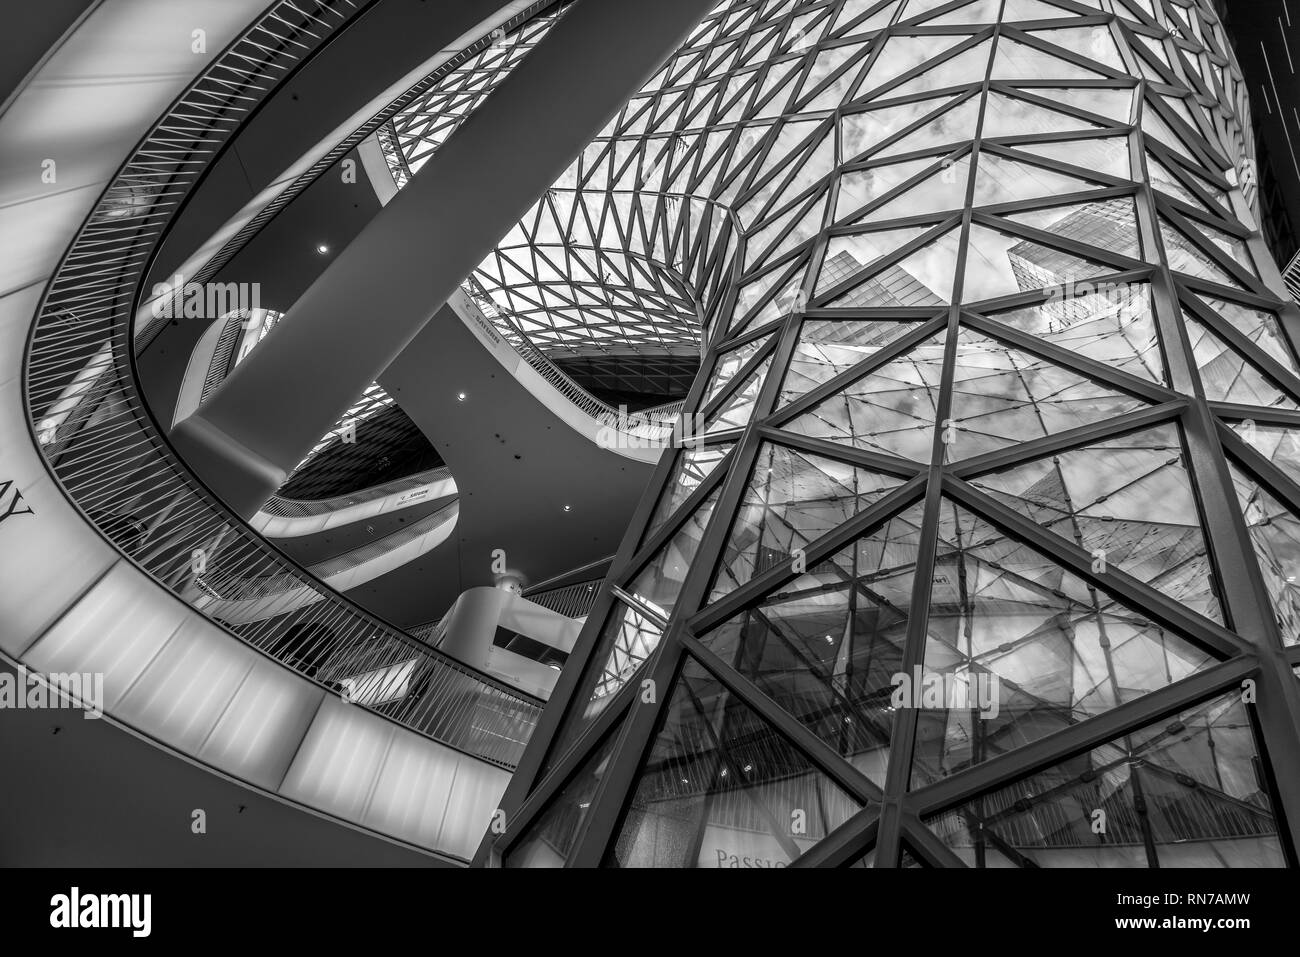 Frankfurt - Juli 26., 2016. Erdgeschoss Blick in Myzeil Shopping Mall. Futuristische Architektur Myzeil Einkaufszentrum Gebäude wurde von Massi konzipiert Stockfoto